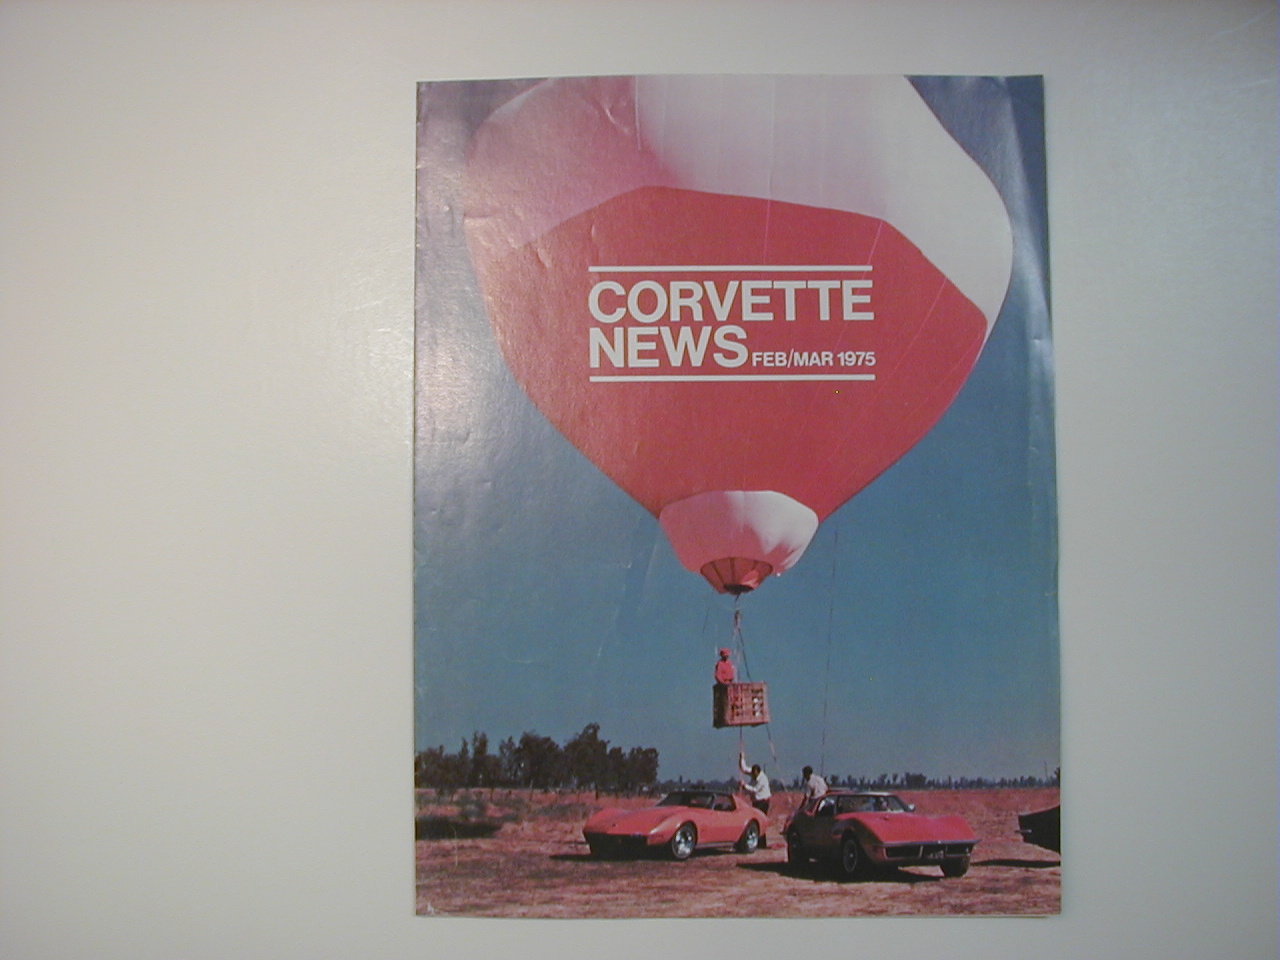 Corvette News Flyer Feb/Mar 1975